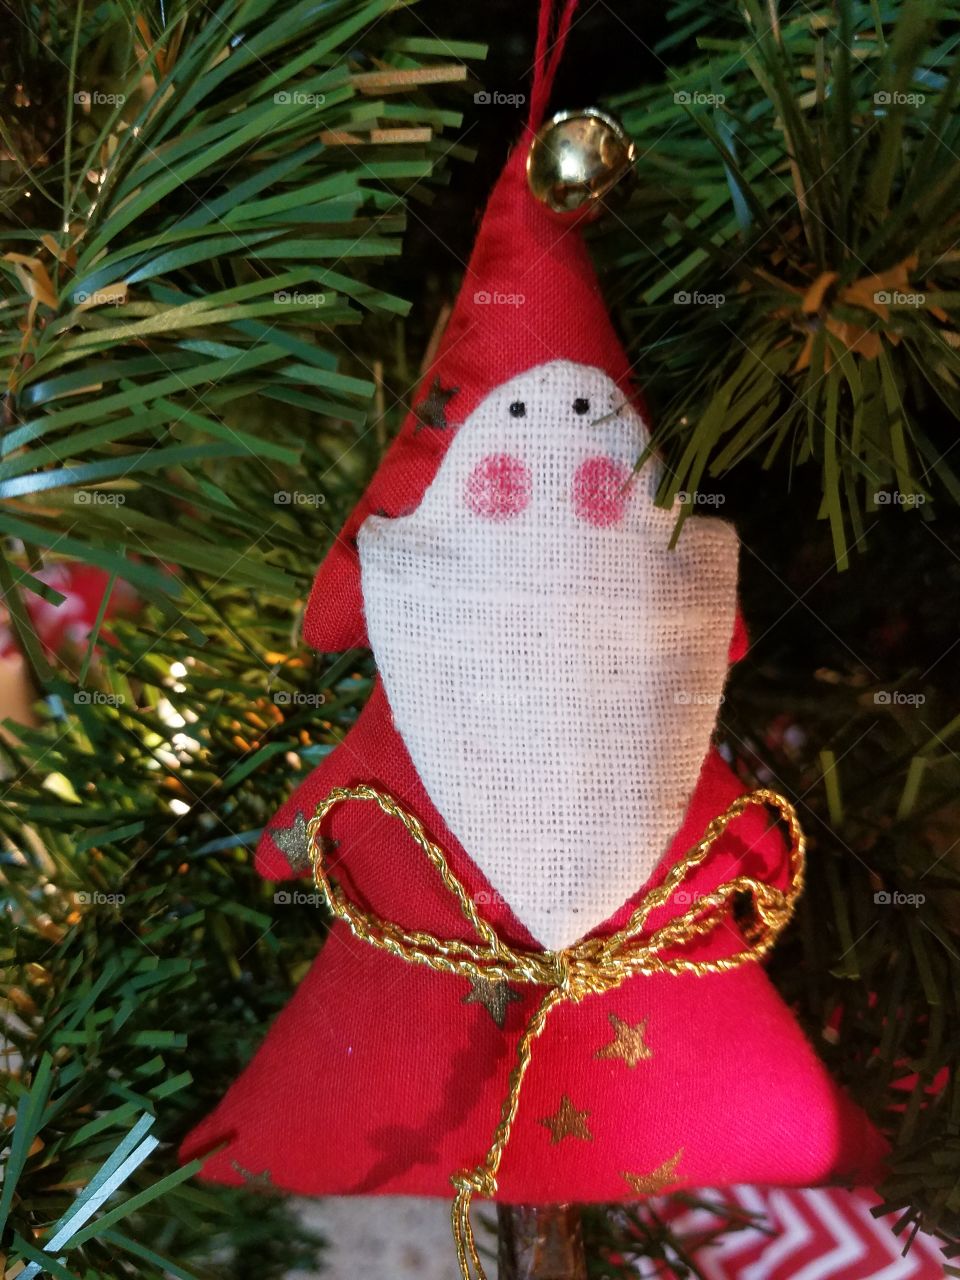 rustic Santa ornament